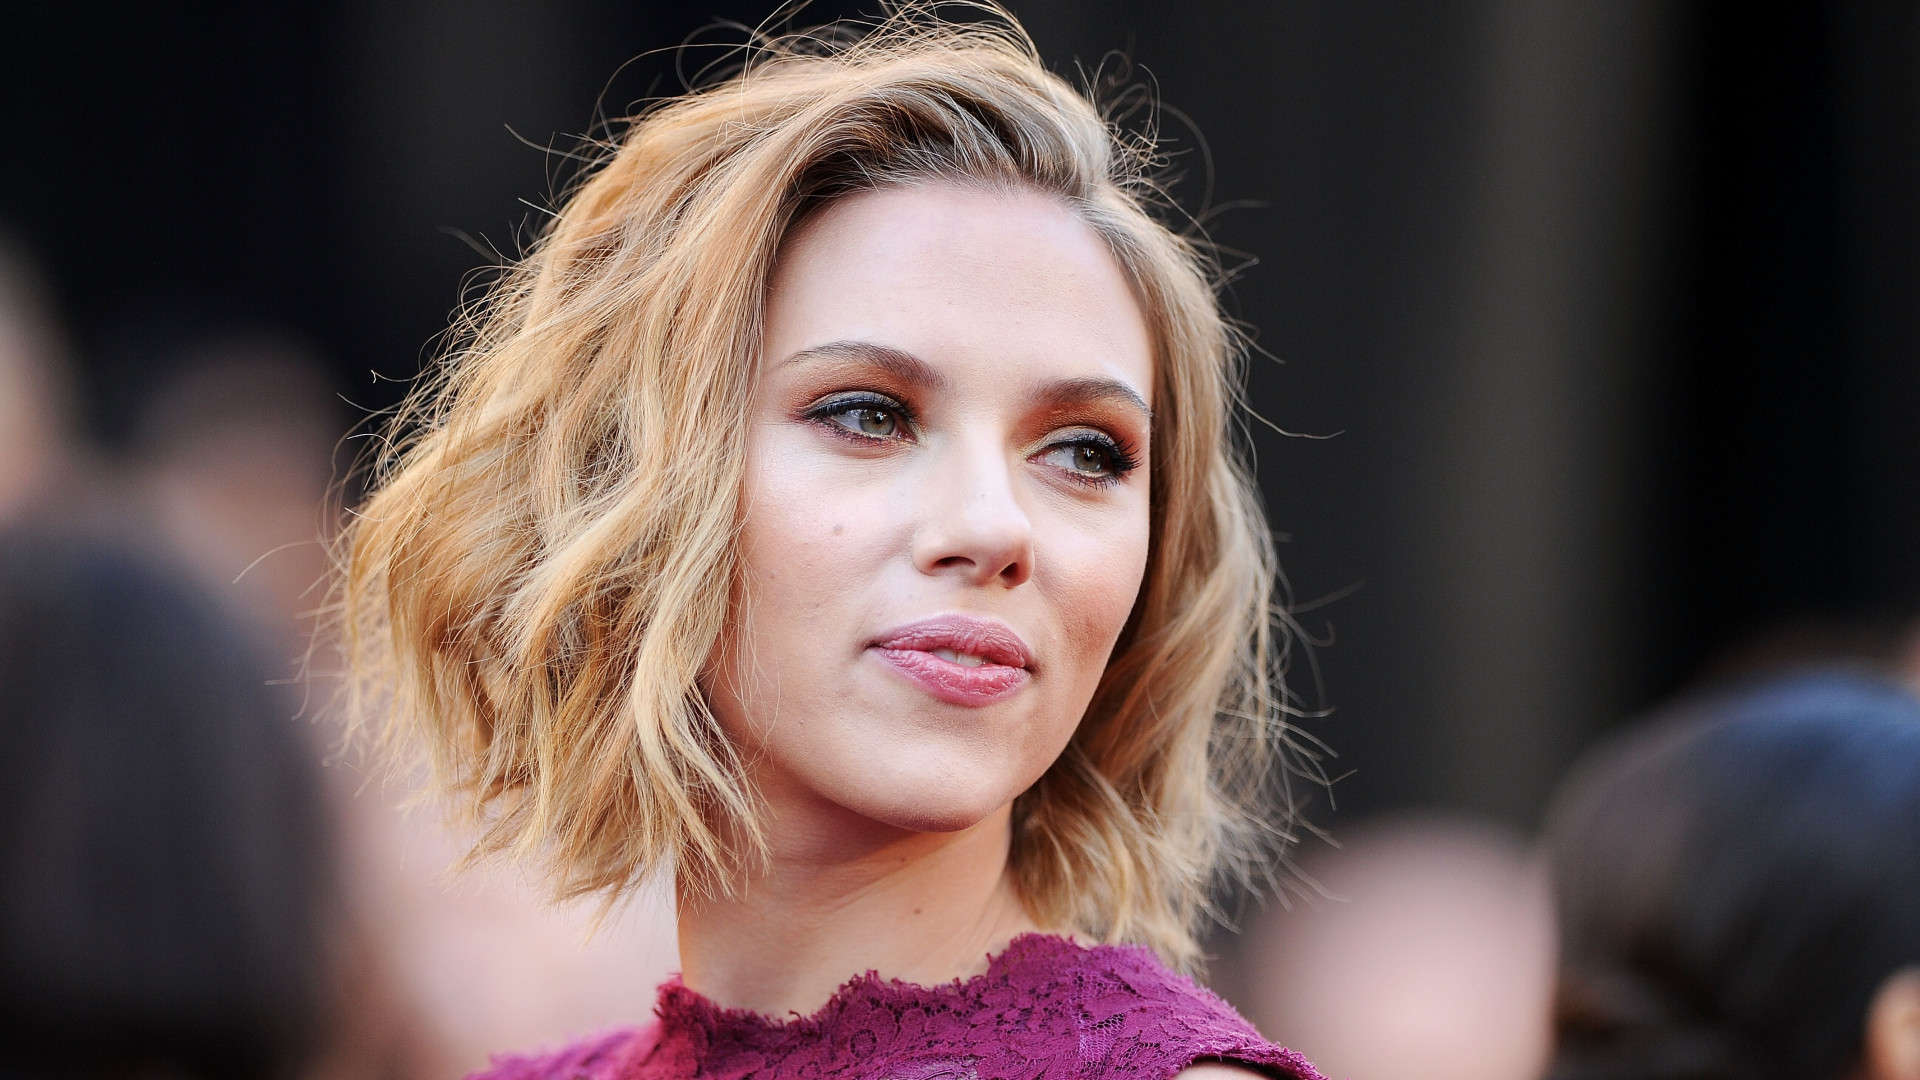 'Estava velha demais para o papel', diz Scarlett Johansson sobre ter sido rejeitada em filme